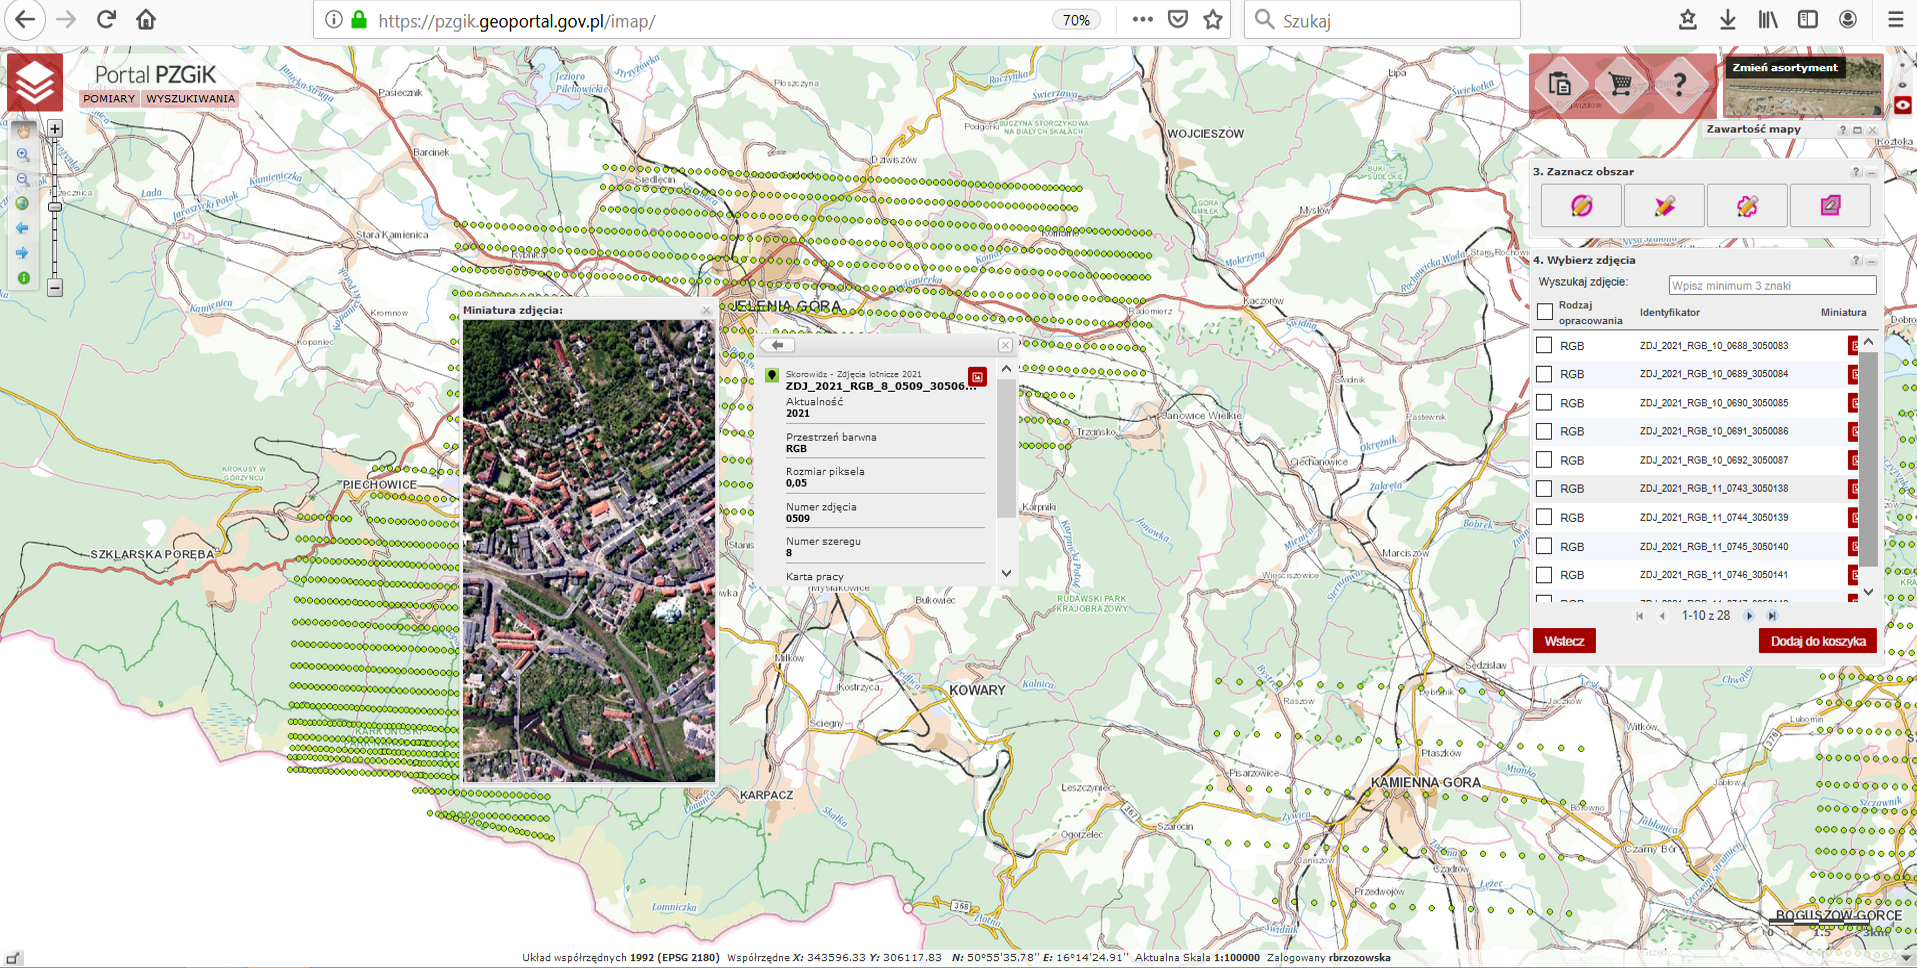 Ilustracja przedstawia zrzut ekranu z portalu https://pzgik.geoportal.gov.pl/imap/ nowo przyjętych zdjęć do państwowego zasobu geodezyjnego i kartograficznego na przykładzie miasta Jelenia Góra